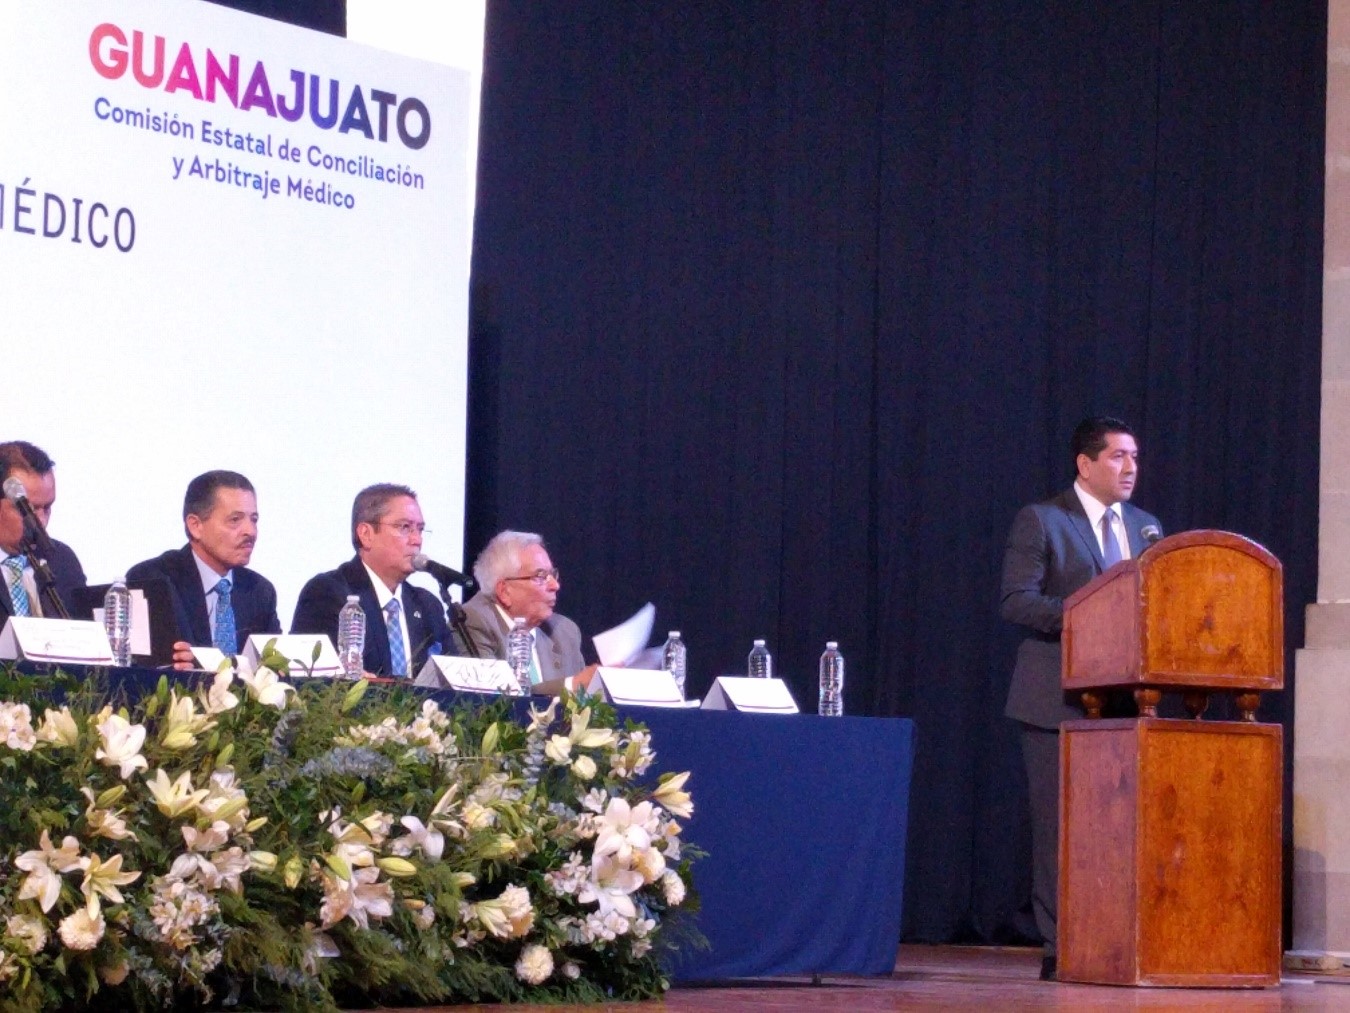 Doctor Ernesto García Caratachea, Comisionado Estatal de Guanajuato durante la inauguración de la XXXII sesión del Consejo Mexicano de Arbitraje Médico